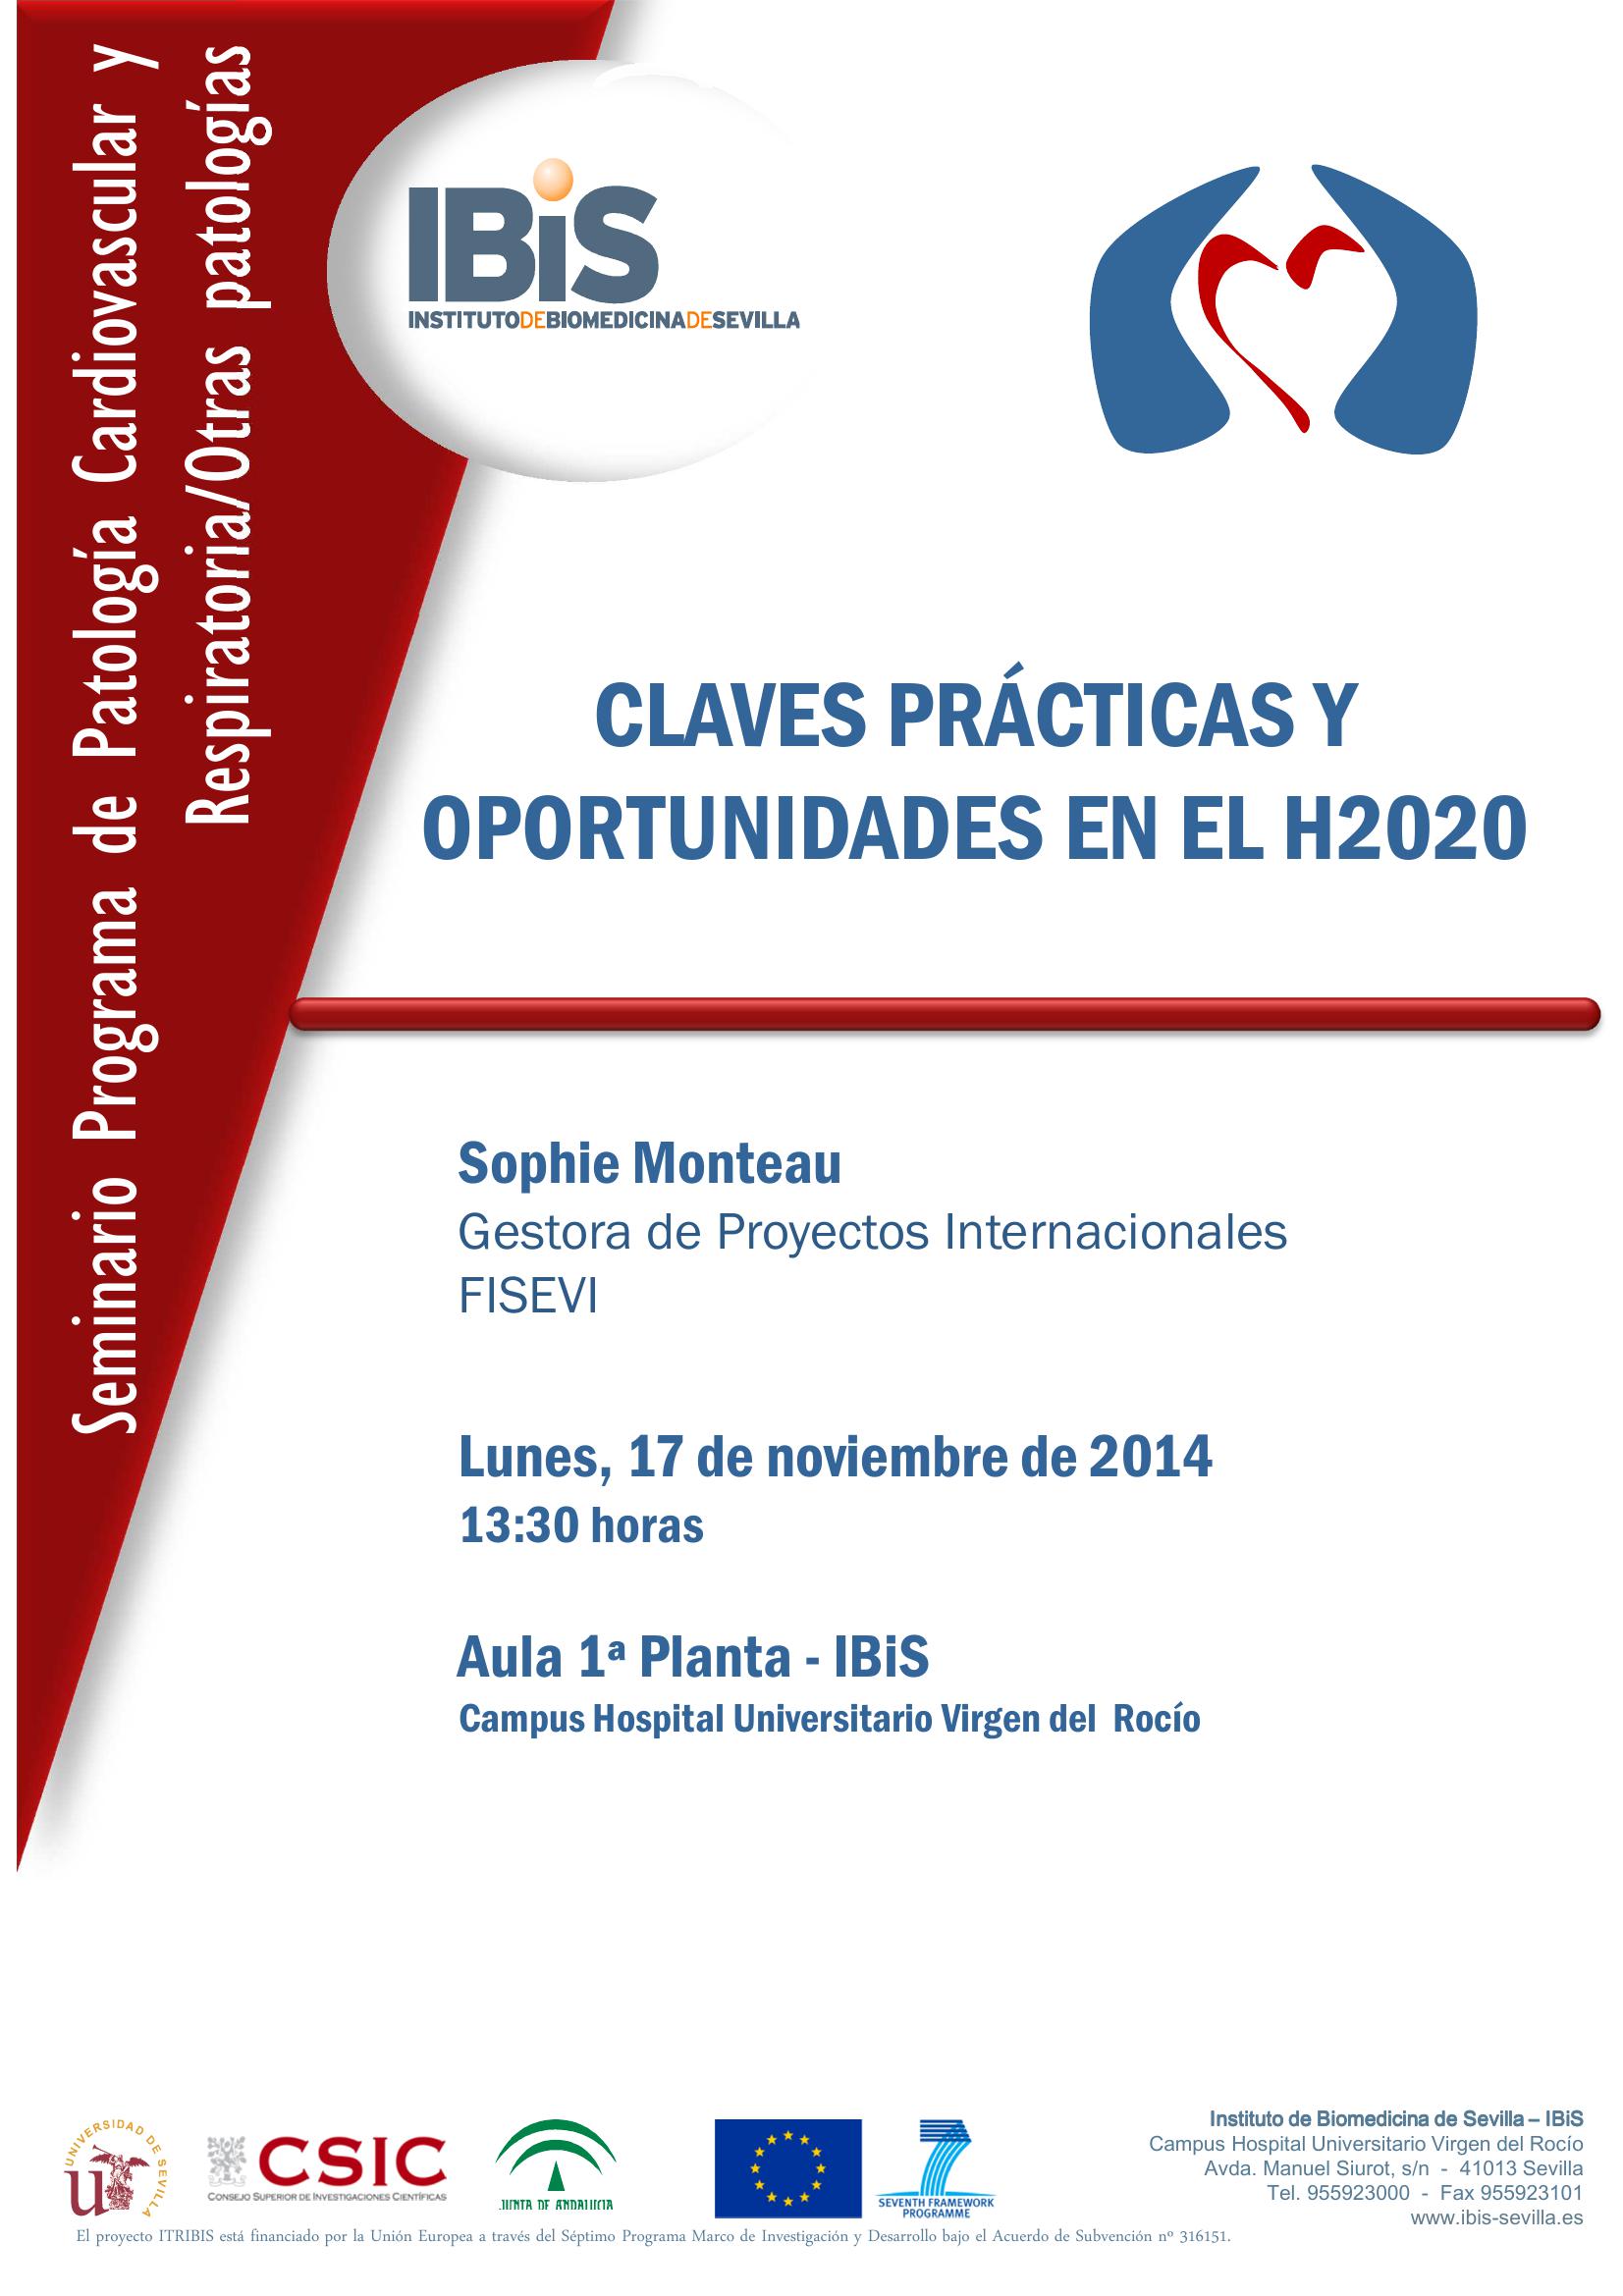 Poster: CLAVES PRÁCTICAS Y OPORTUNIDADES EN EL H2020